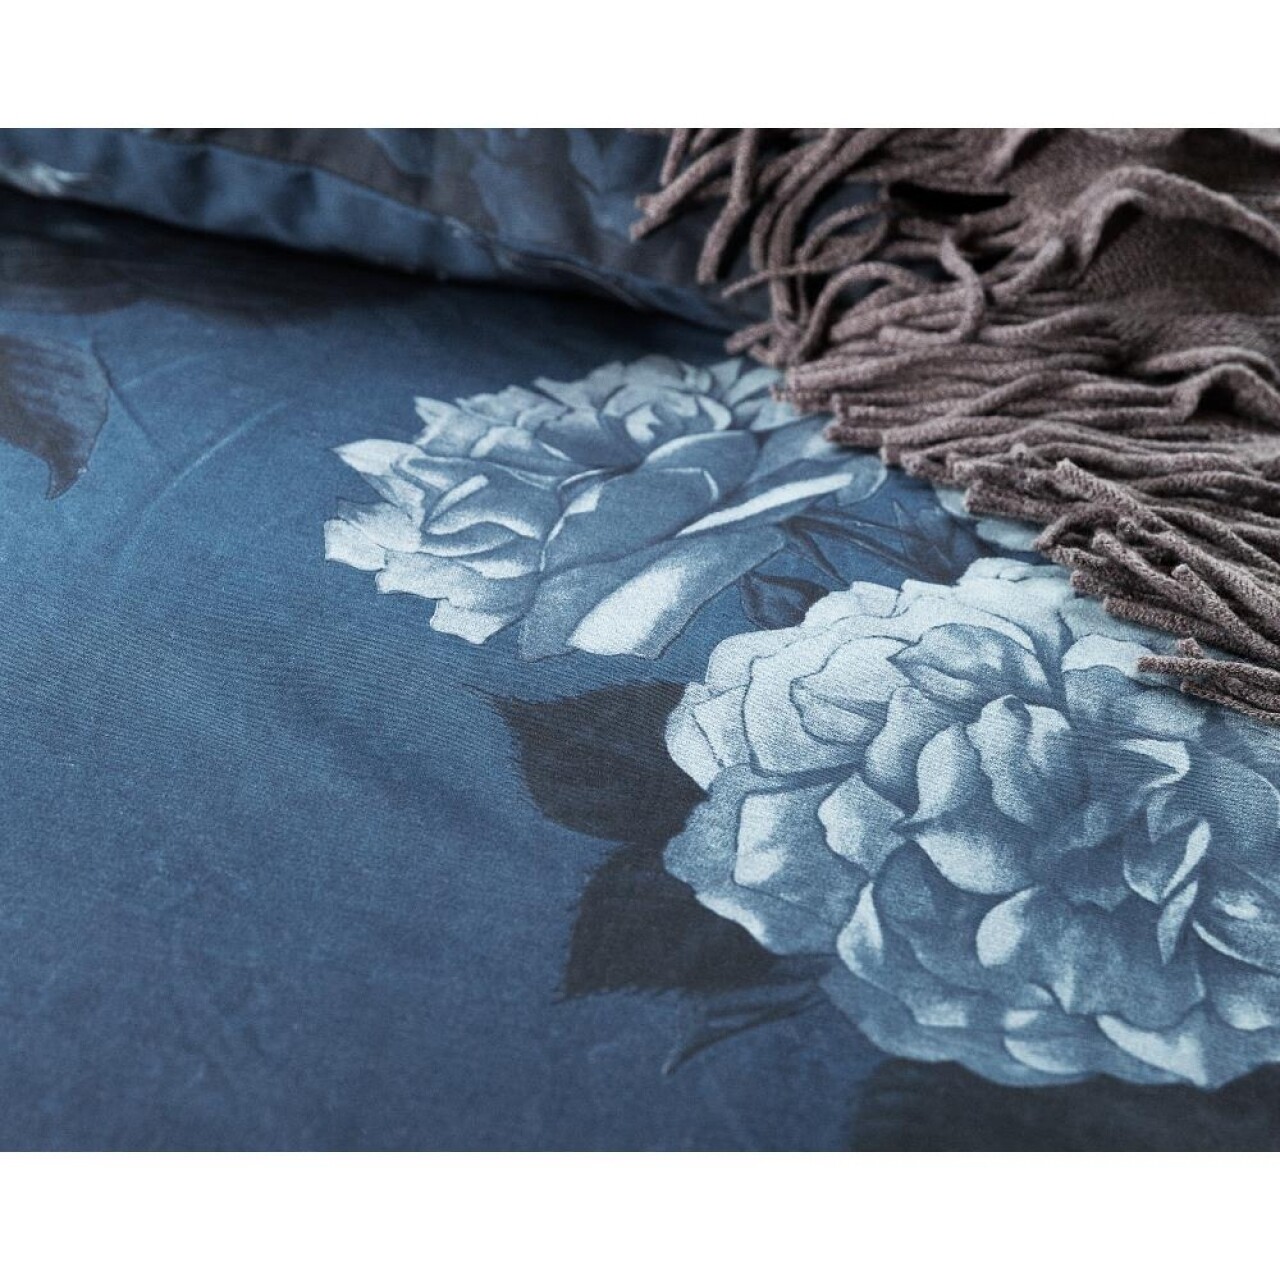 Lenjerie De Pat Dubla Blue Morning - Primavera Deluxe, Royal Textile, 3 Piese, 240 X 260 Cm, 100% Bumbac, Multicolor